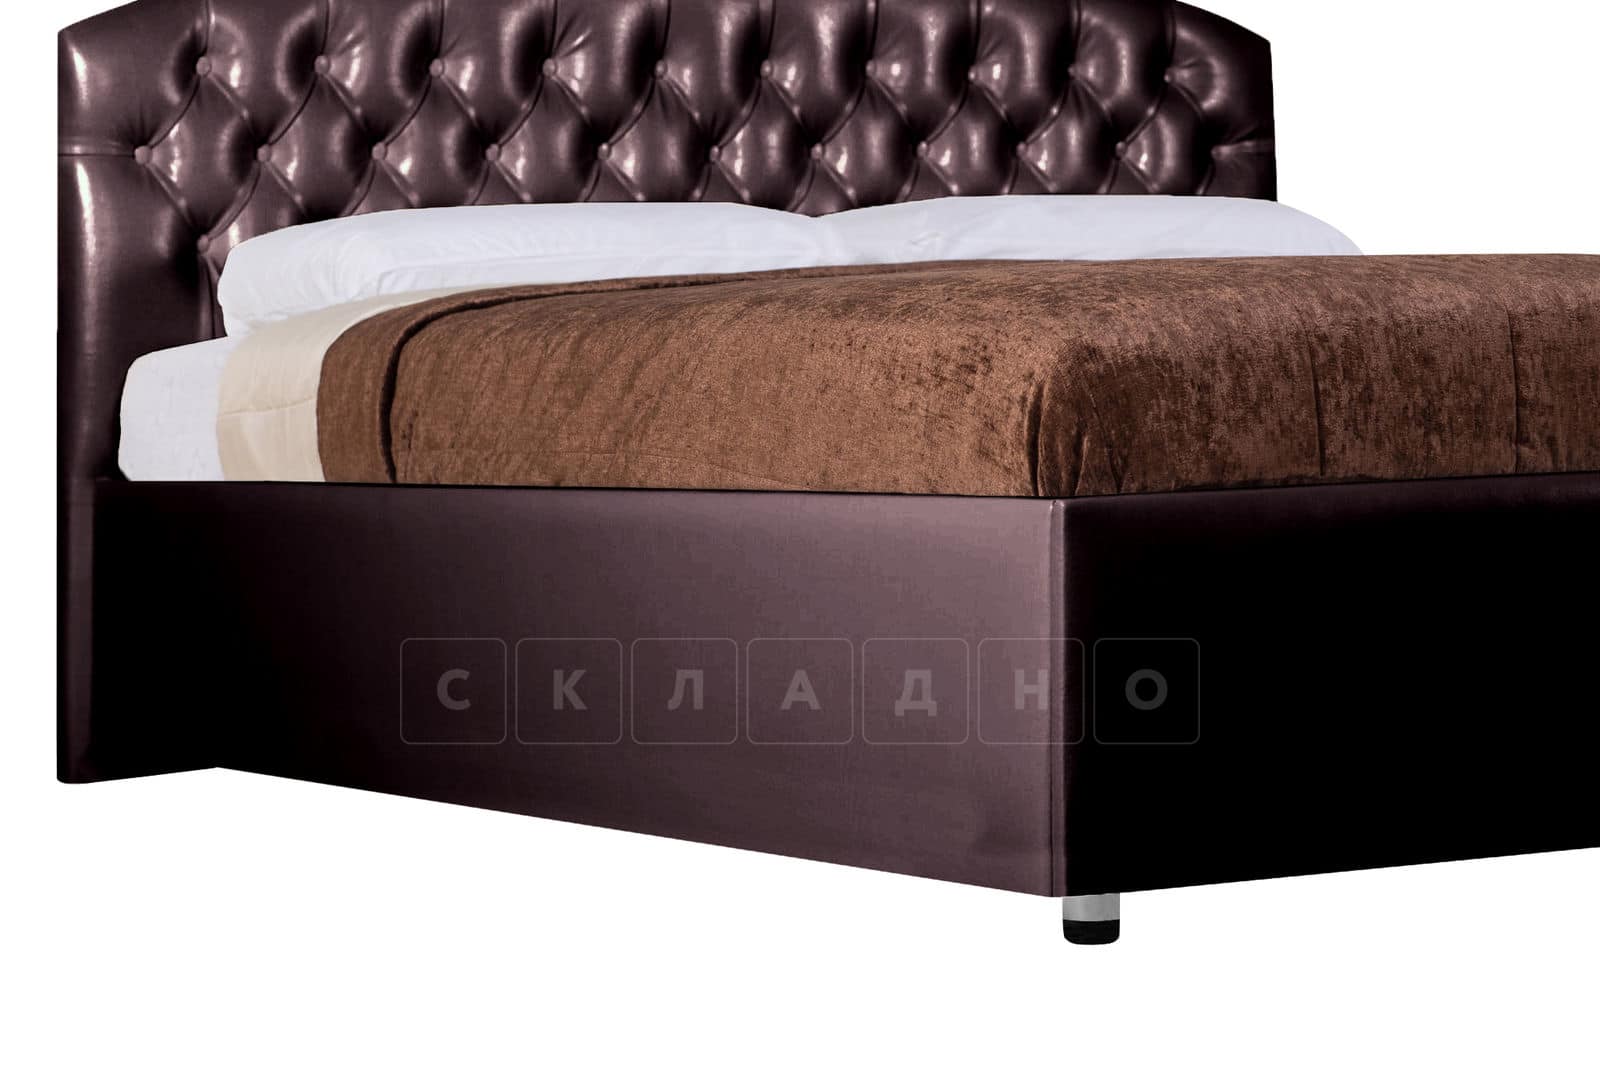 Мягкая кровать Малибу 160см экокожа шоколадного цвета вариант 1-2 фото 8 | интернет-магазин Складно